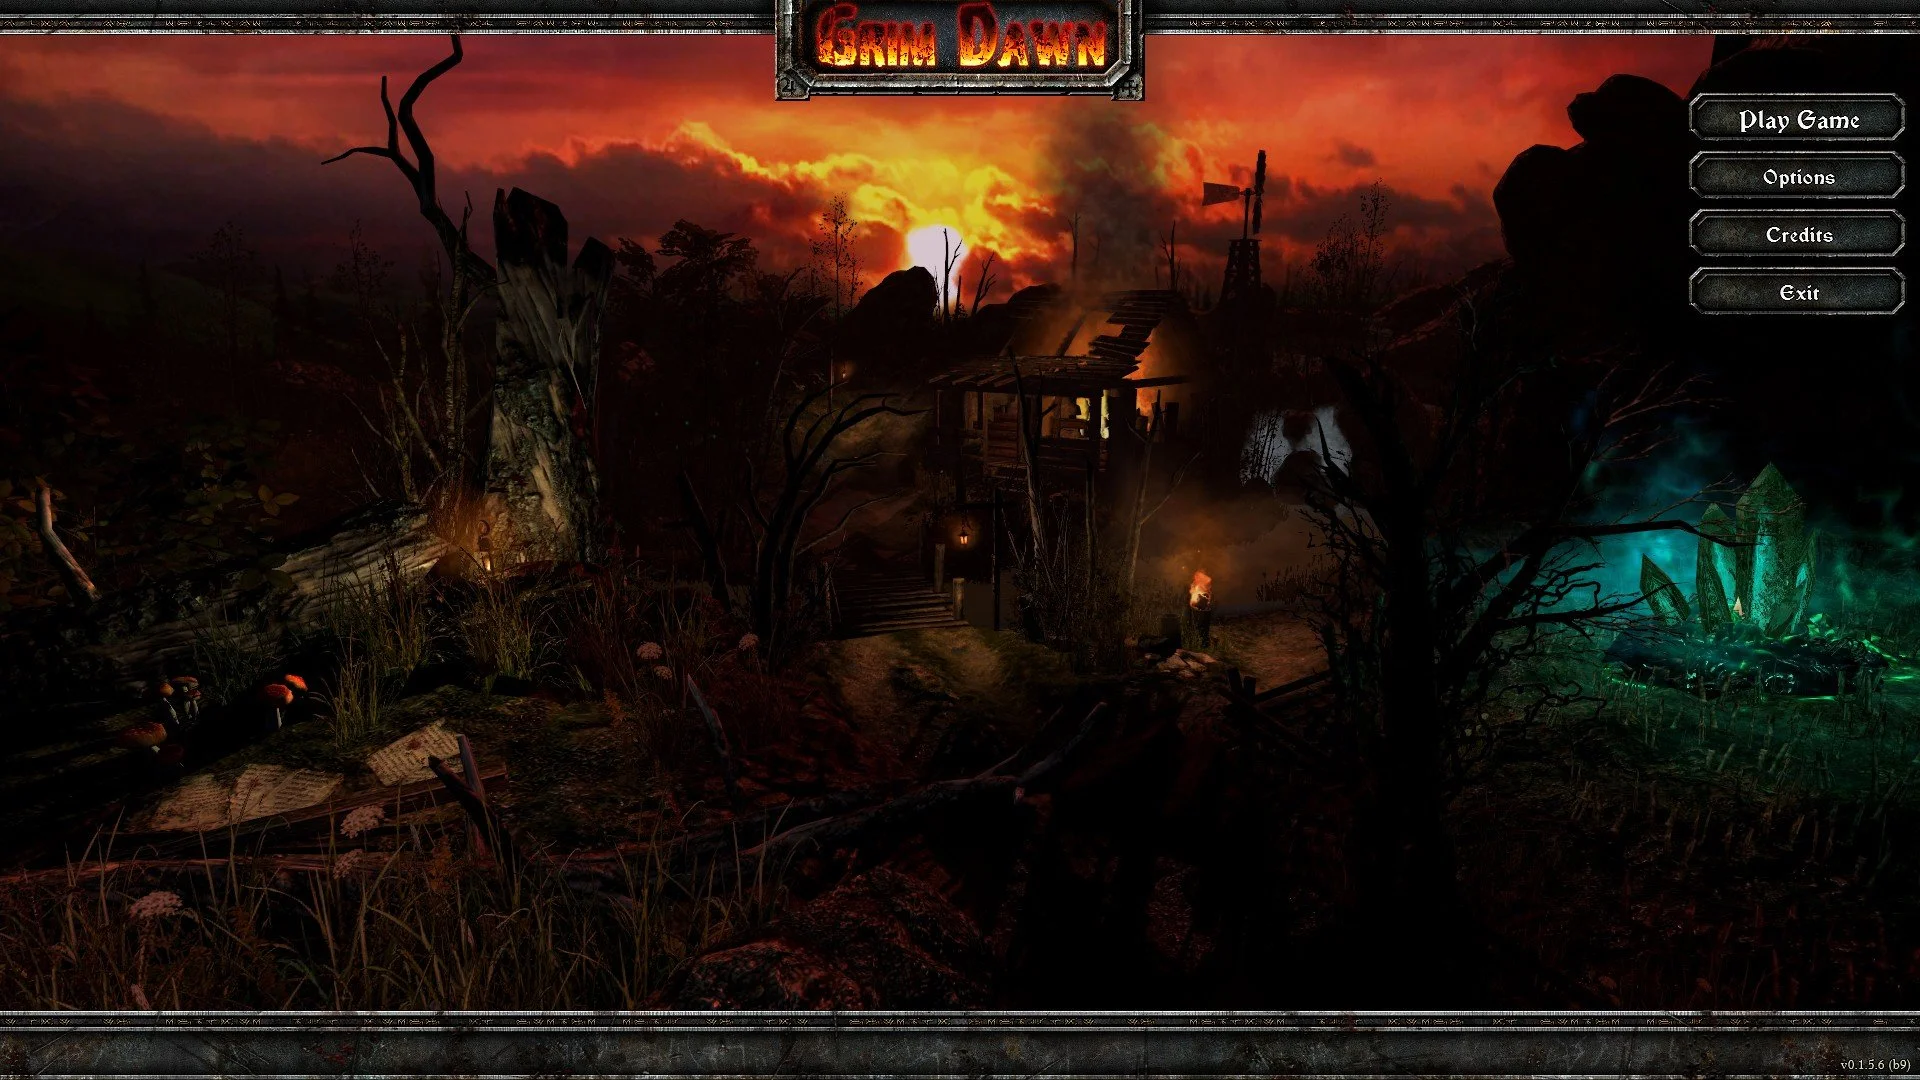 Итак, дорогие друзья, около недели прошло со дня выпуска закрытой альфы проекта Grim Dawn - хак-н-слэш РПГ от создателей Titan Quest. На мой взгляд, Titan Quest является выдающейся игрой во всех смыслах, особенно в том, что касается клонирования Diablo II. 